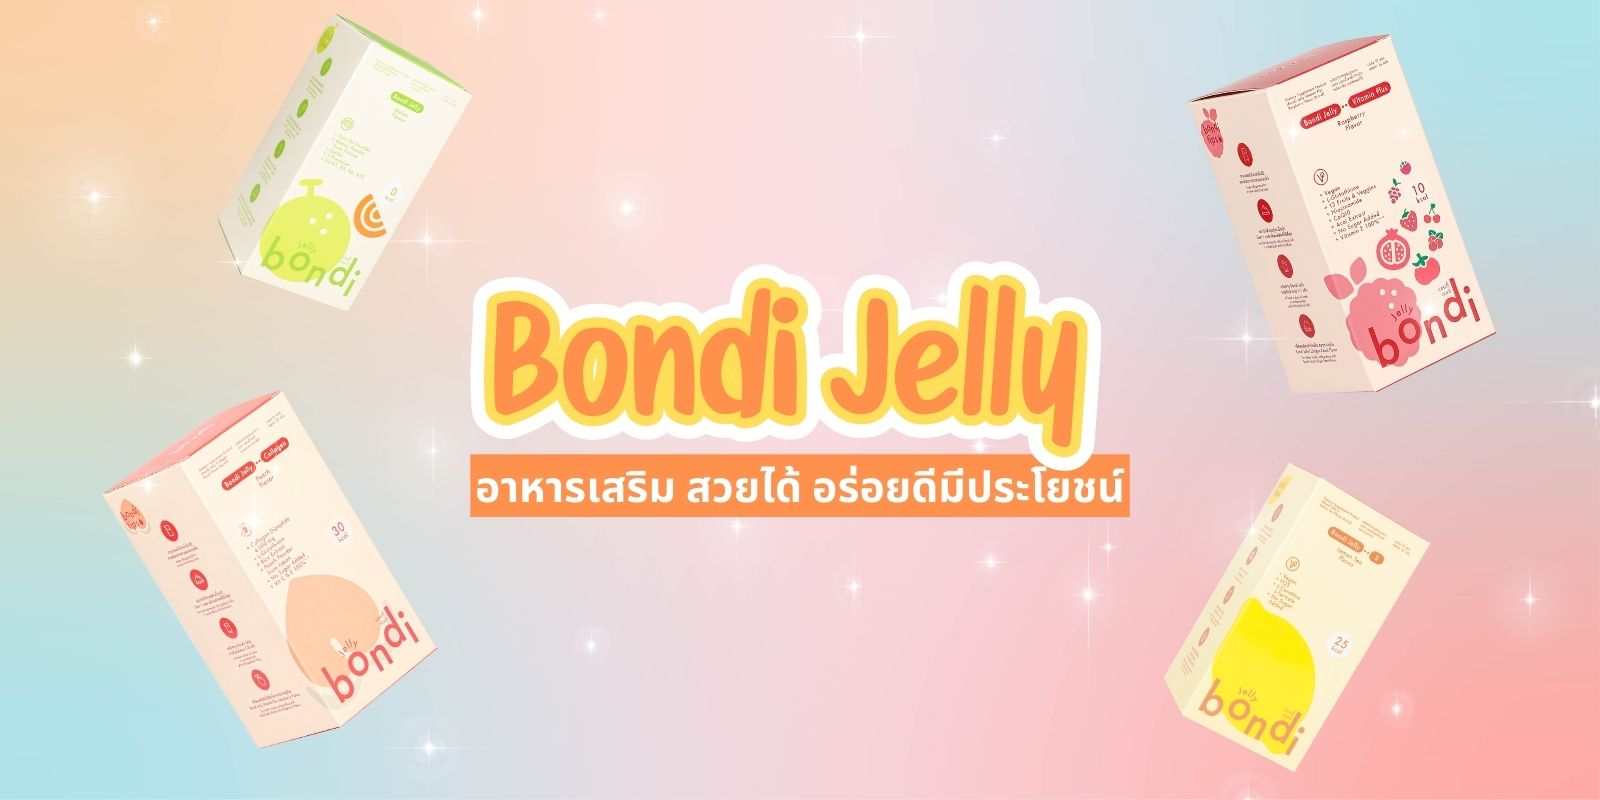 แนะนำ 7 สูตร Bondi Jelly อาหารเสริม สวยได้ อร่อยดีมีประโยชน์